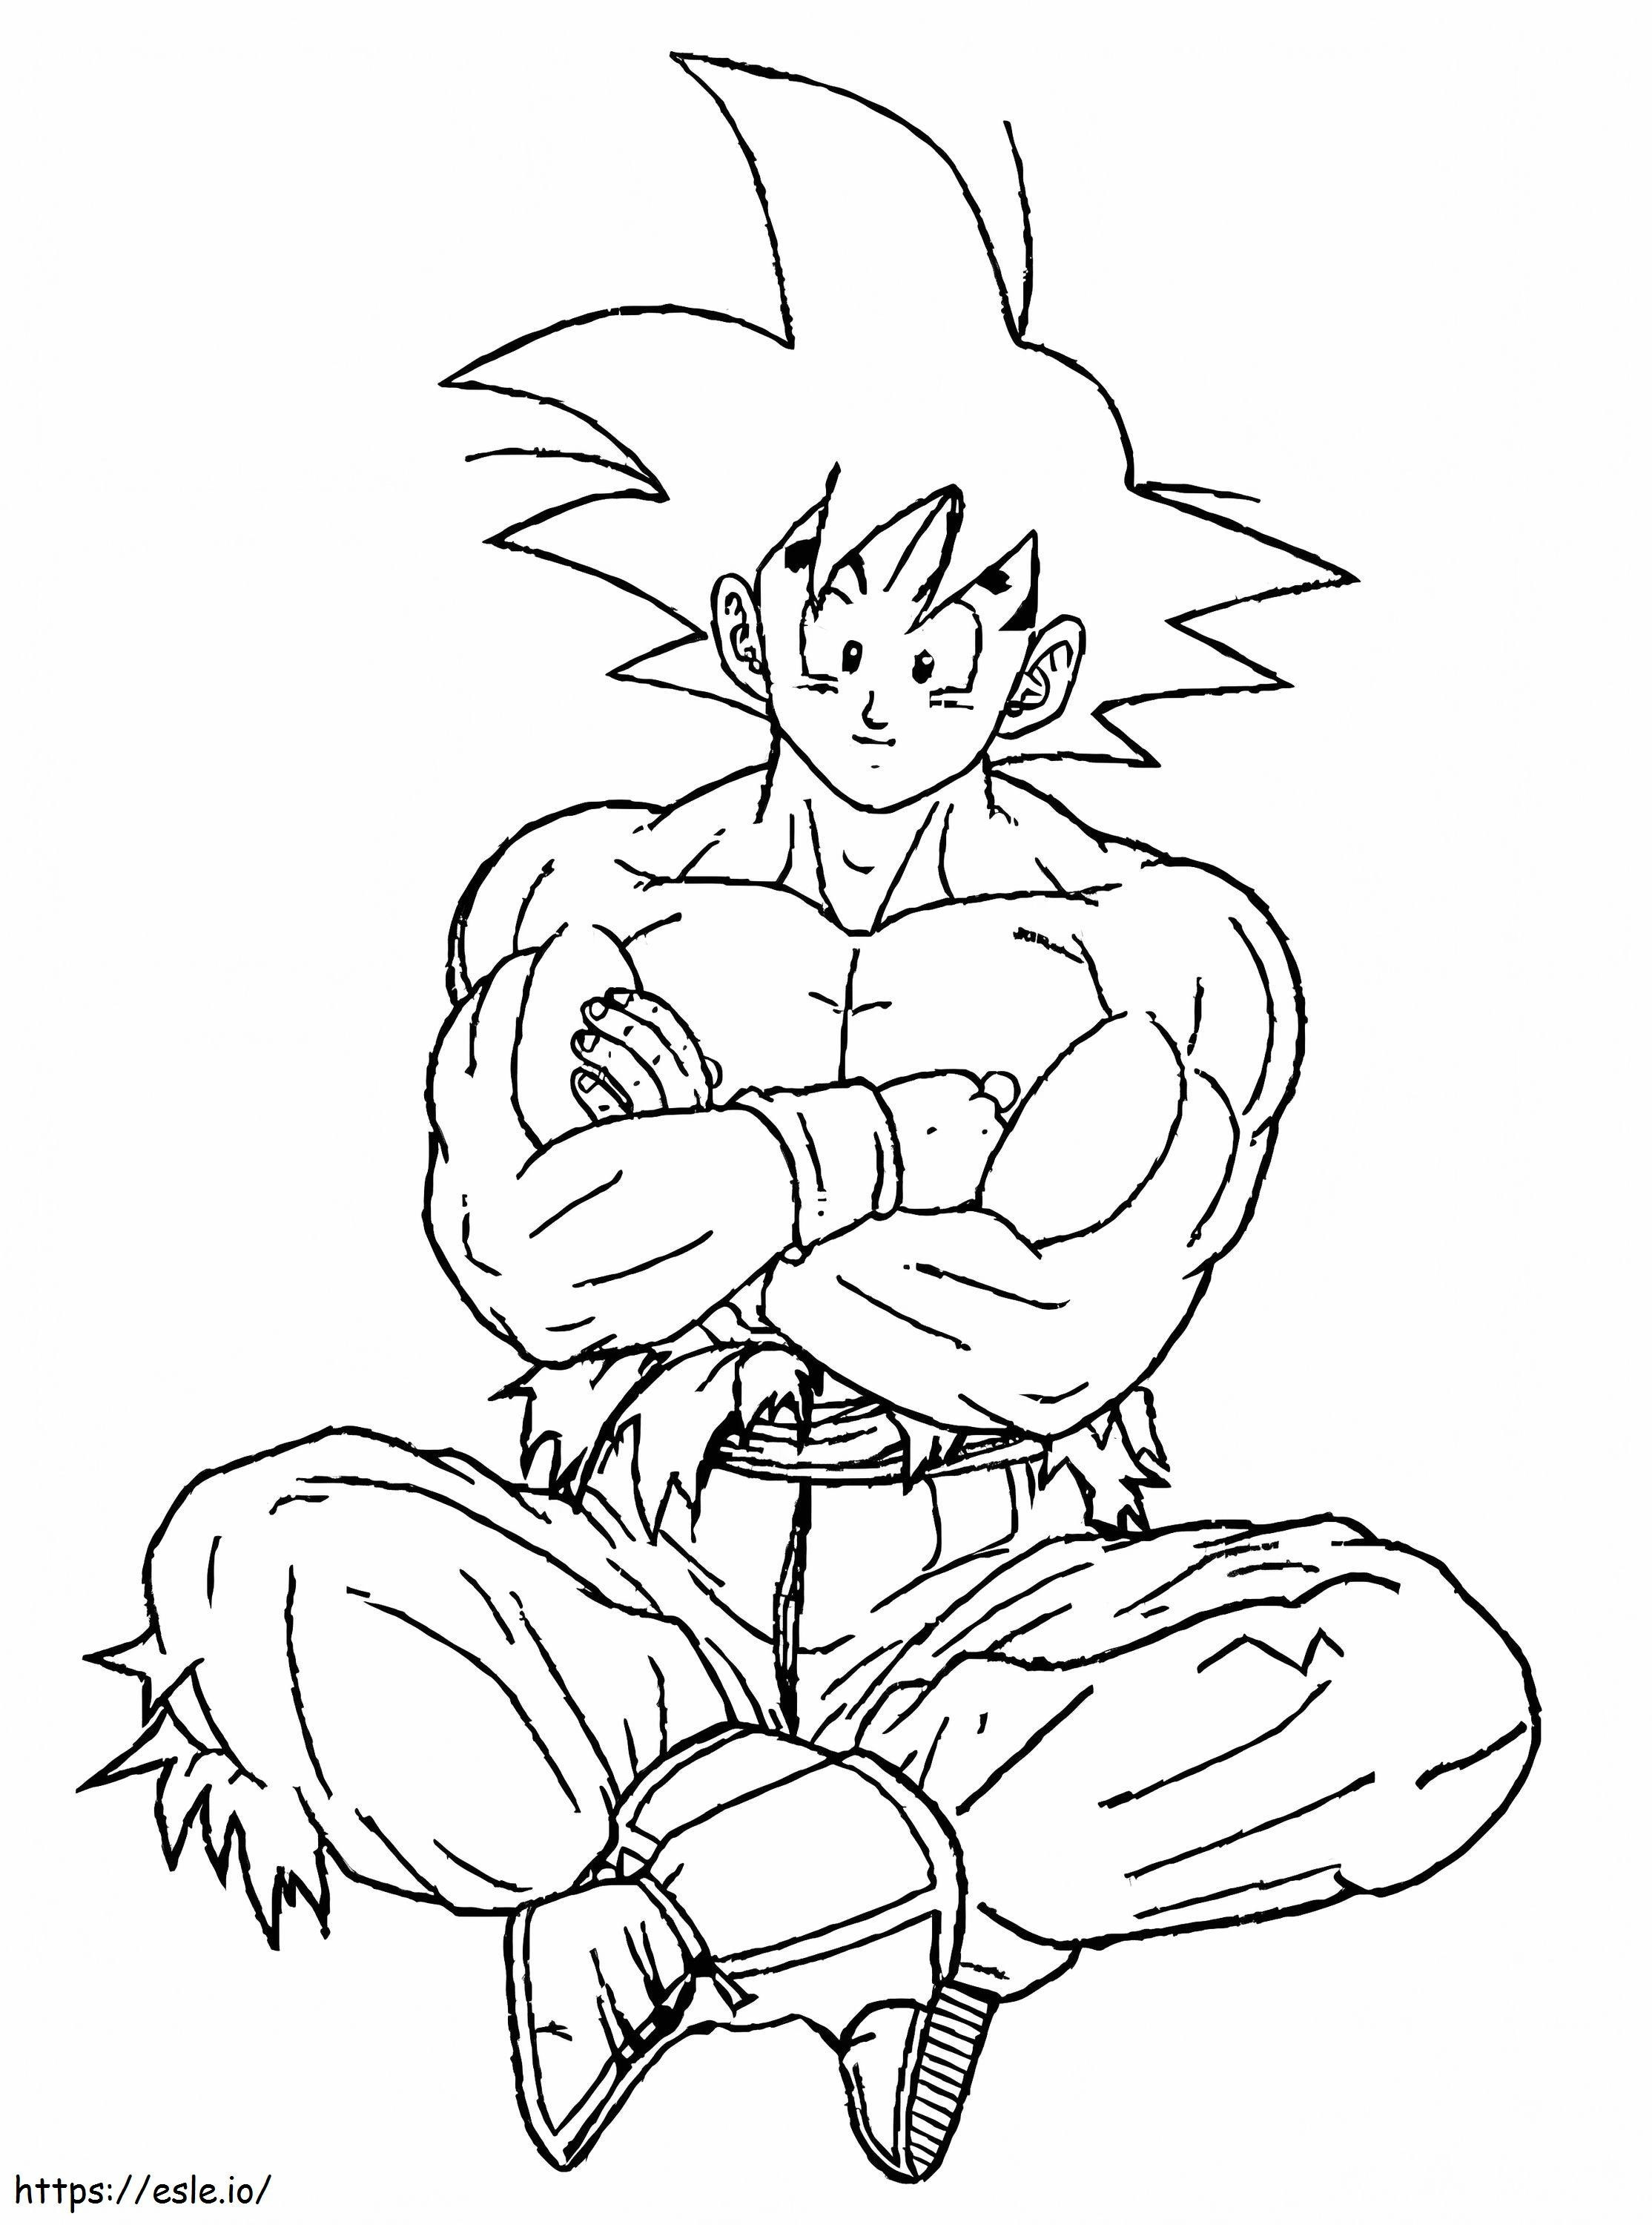 Son Goku seduto da colorare